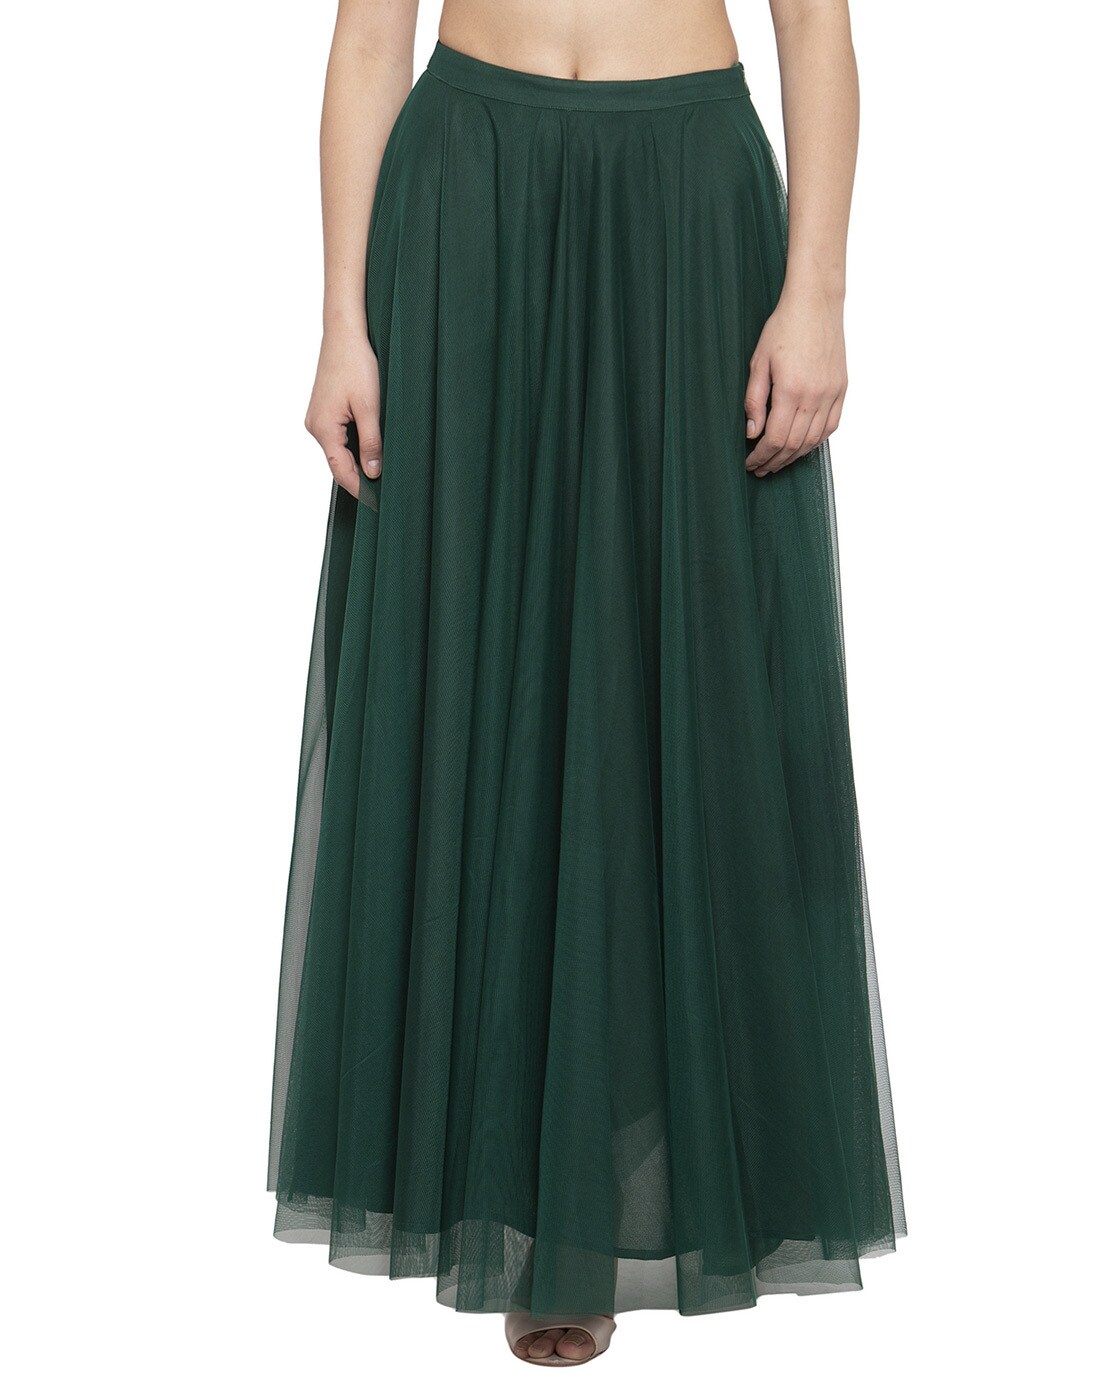 DRASHMIZE Solid Women Regular Green Skirt - Buy DRASHMIZE Solid Women  Regular Green Skirt Online at Best Prices in India | Flipkart.com